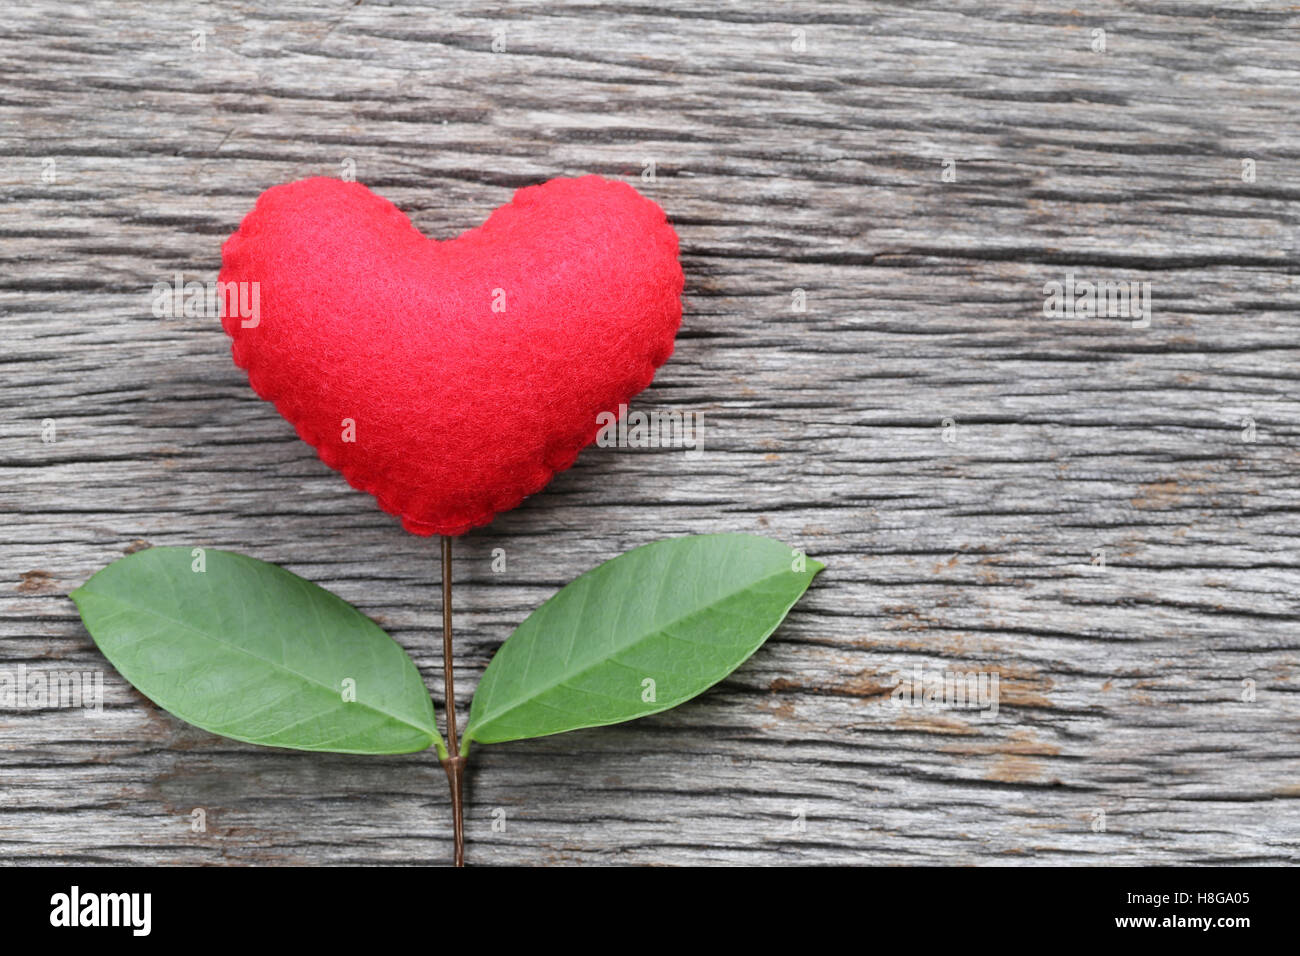 Cuore rosso collocato su un vecchio tavolo di legno nel collegare con rami di albero e hanno foglie verdi,concetto di amore empatia prendersi cura Foto Stock